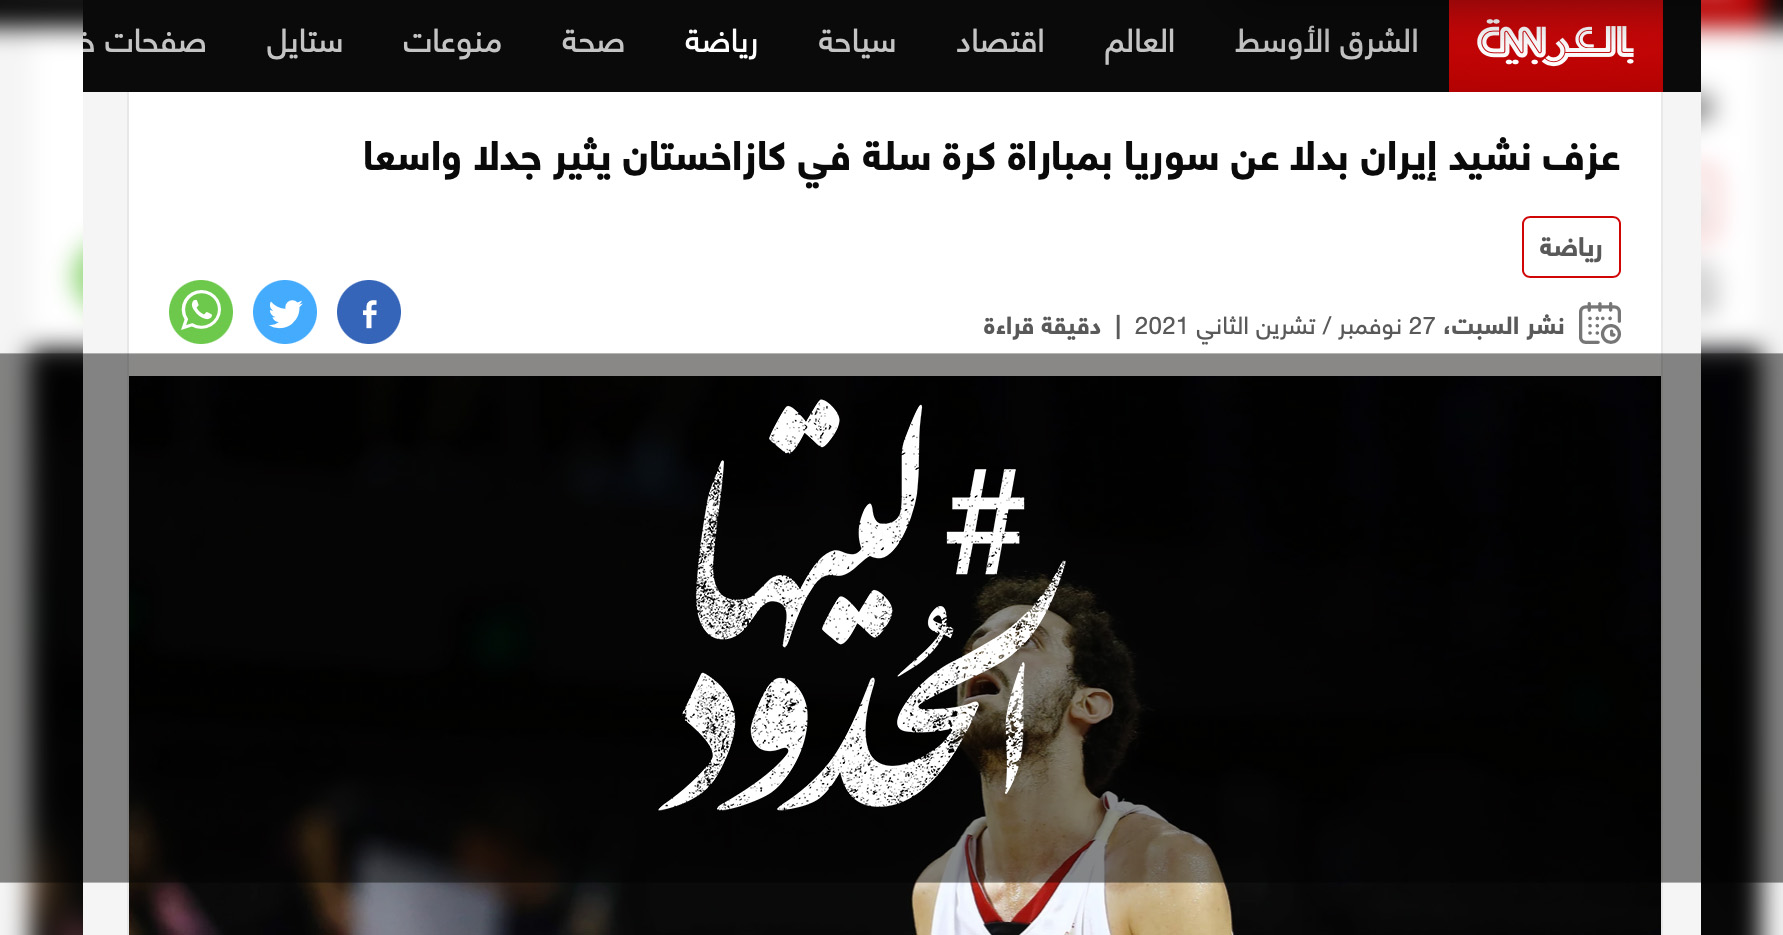 صورة عزف نشيد إيران بدلا عن سوريا بمباراة كرة سلة في كازاخستان يثير جدلا واسعا